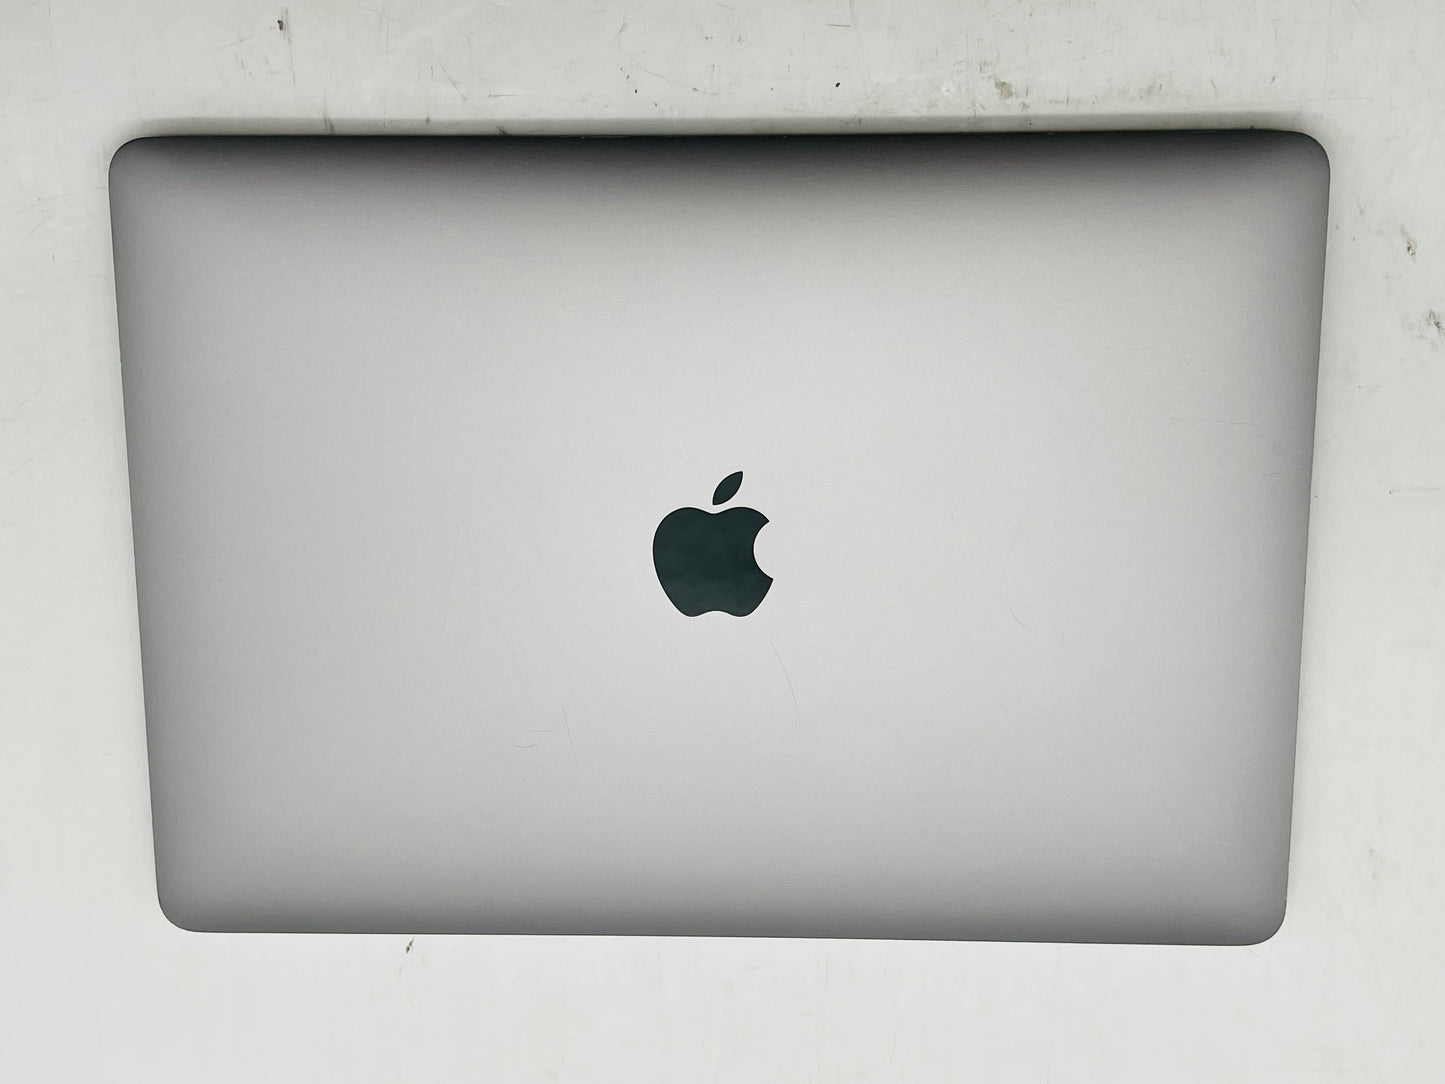 Apple 2019 MacBook Pro 13 in TB 2.8GHz Quad-Core i7 16GB RAM 512GB SSD